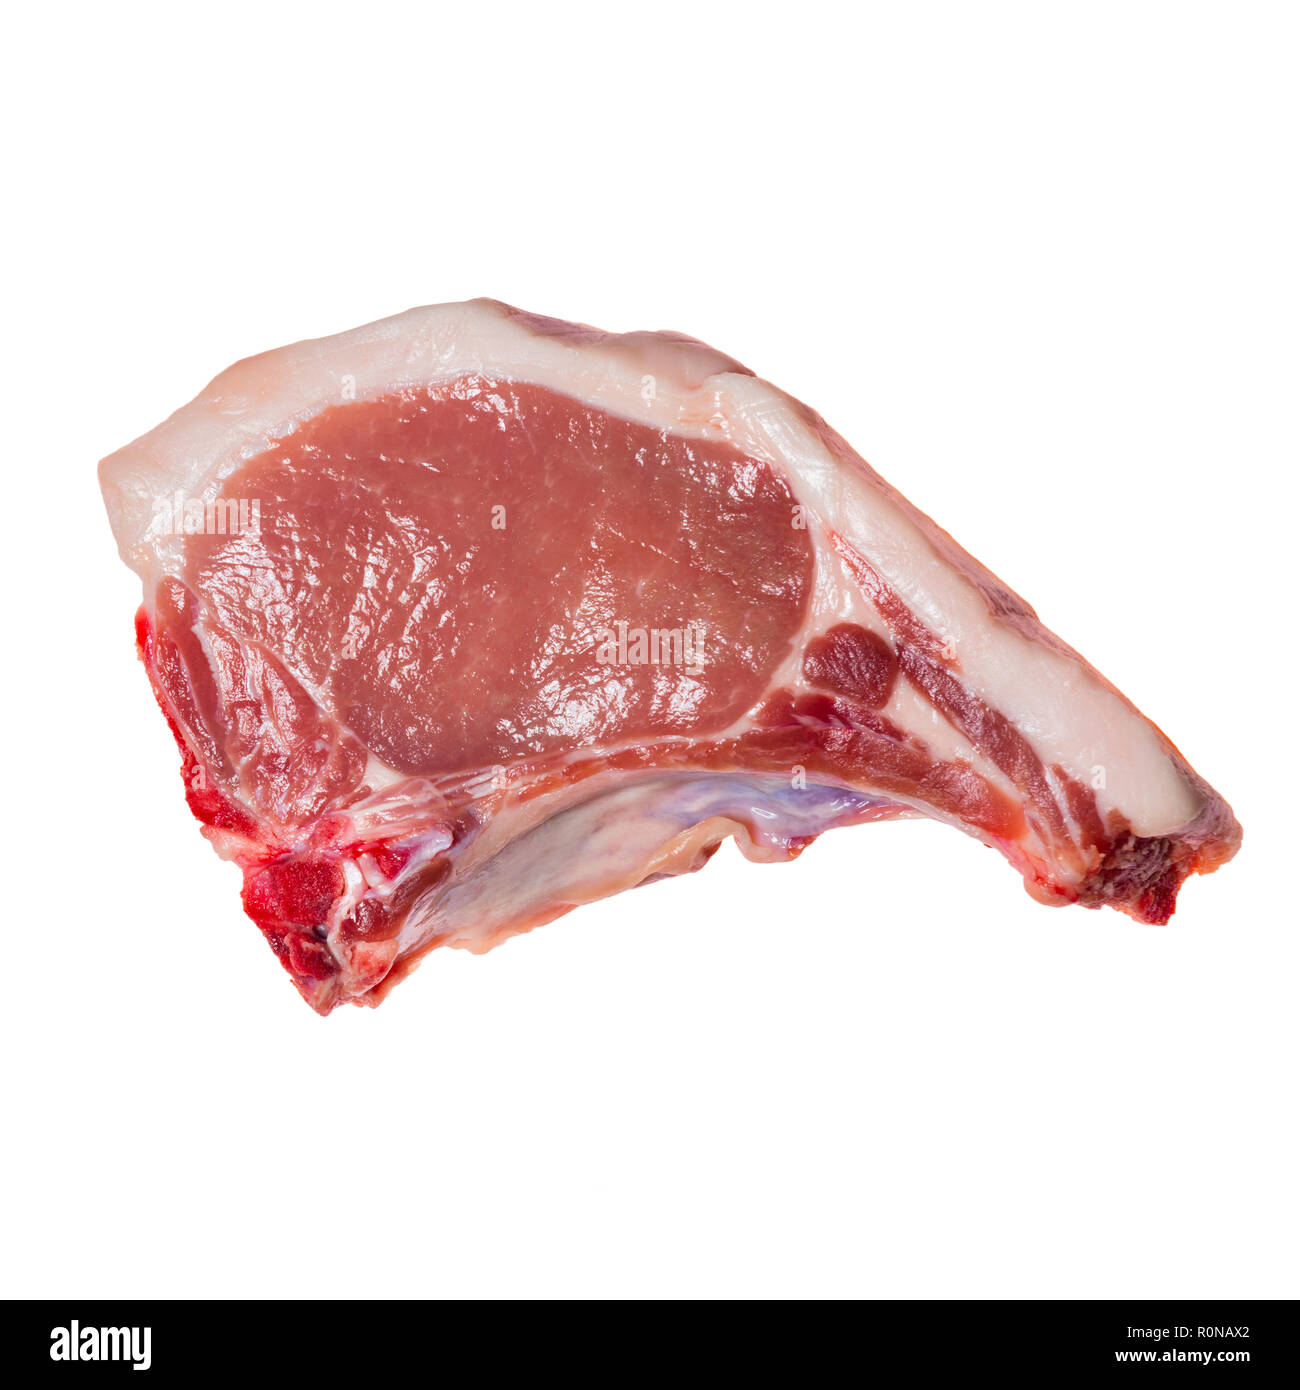 Tradizionale tritare la carne di maiale da una fattoria negozio macelleria, UK. La carne cruda tritare dal di sopra su uno sfondo bianco. Foto Stock